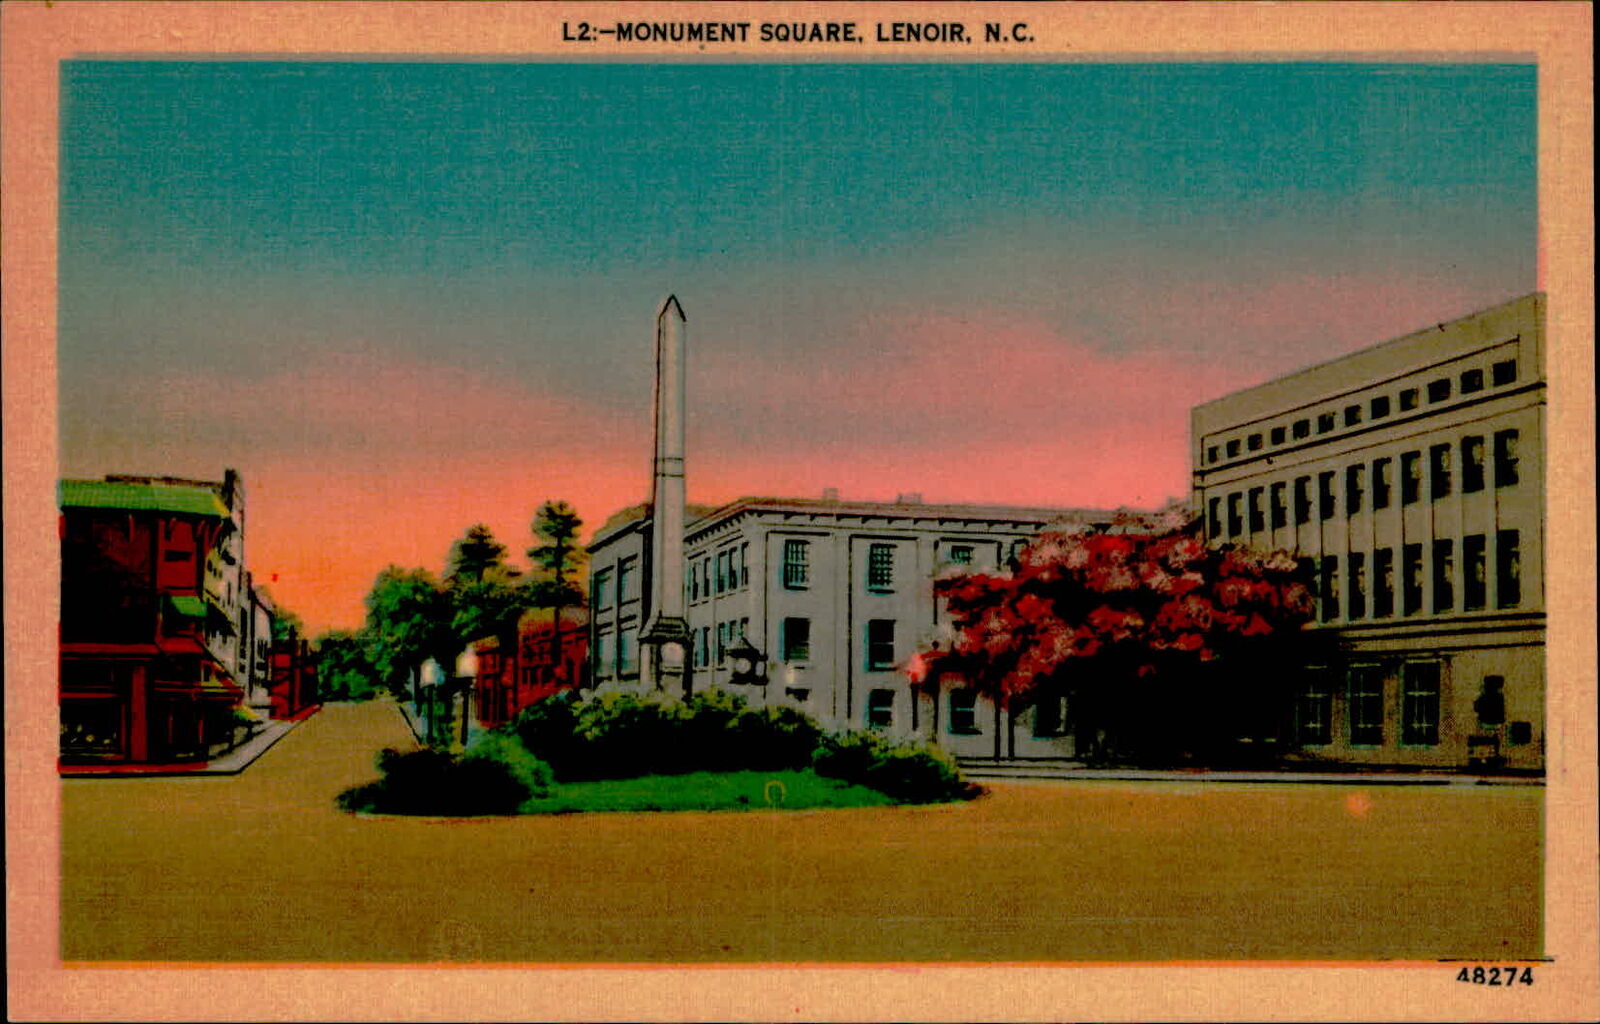 Postcard: L2:-MONUMENT SQUARE, LENOIR, N.C.